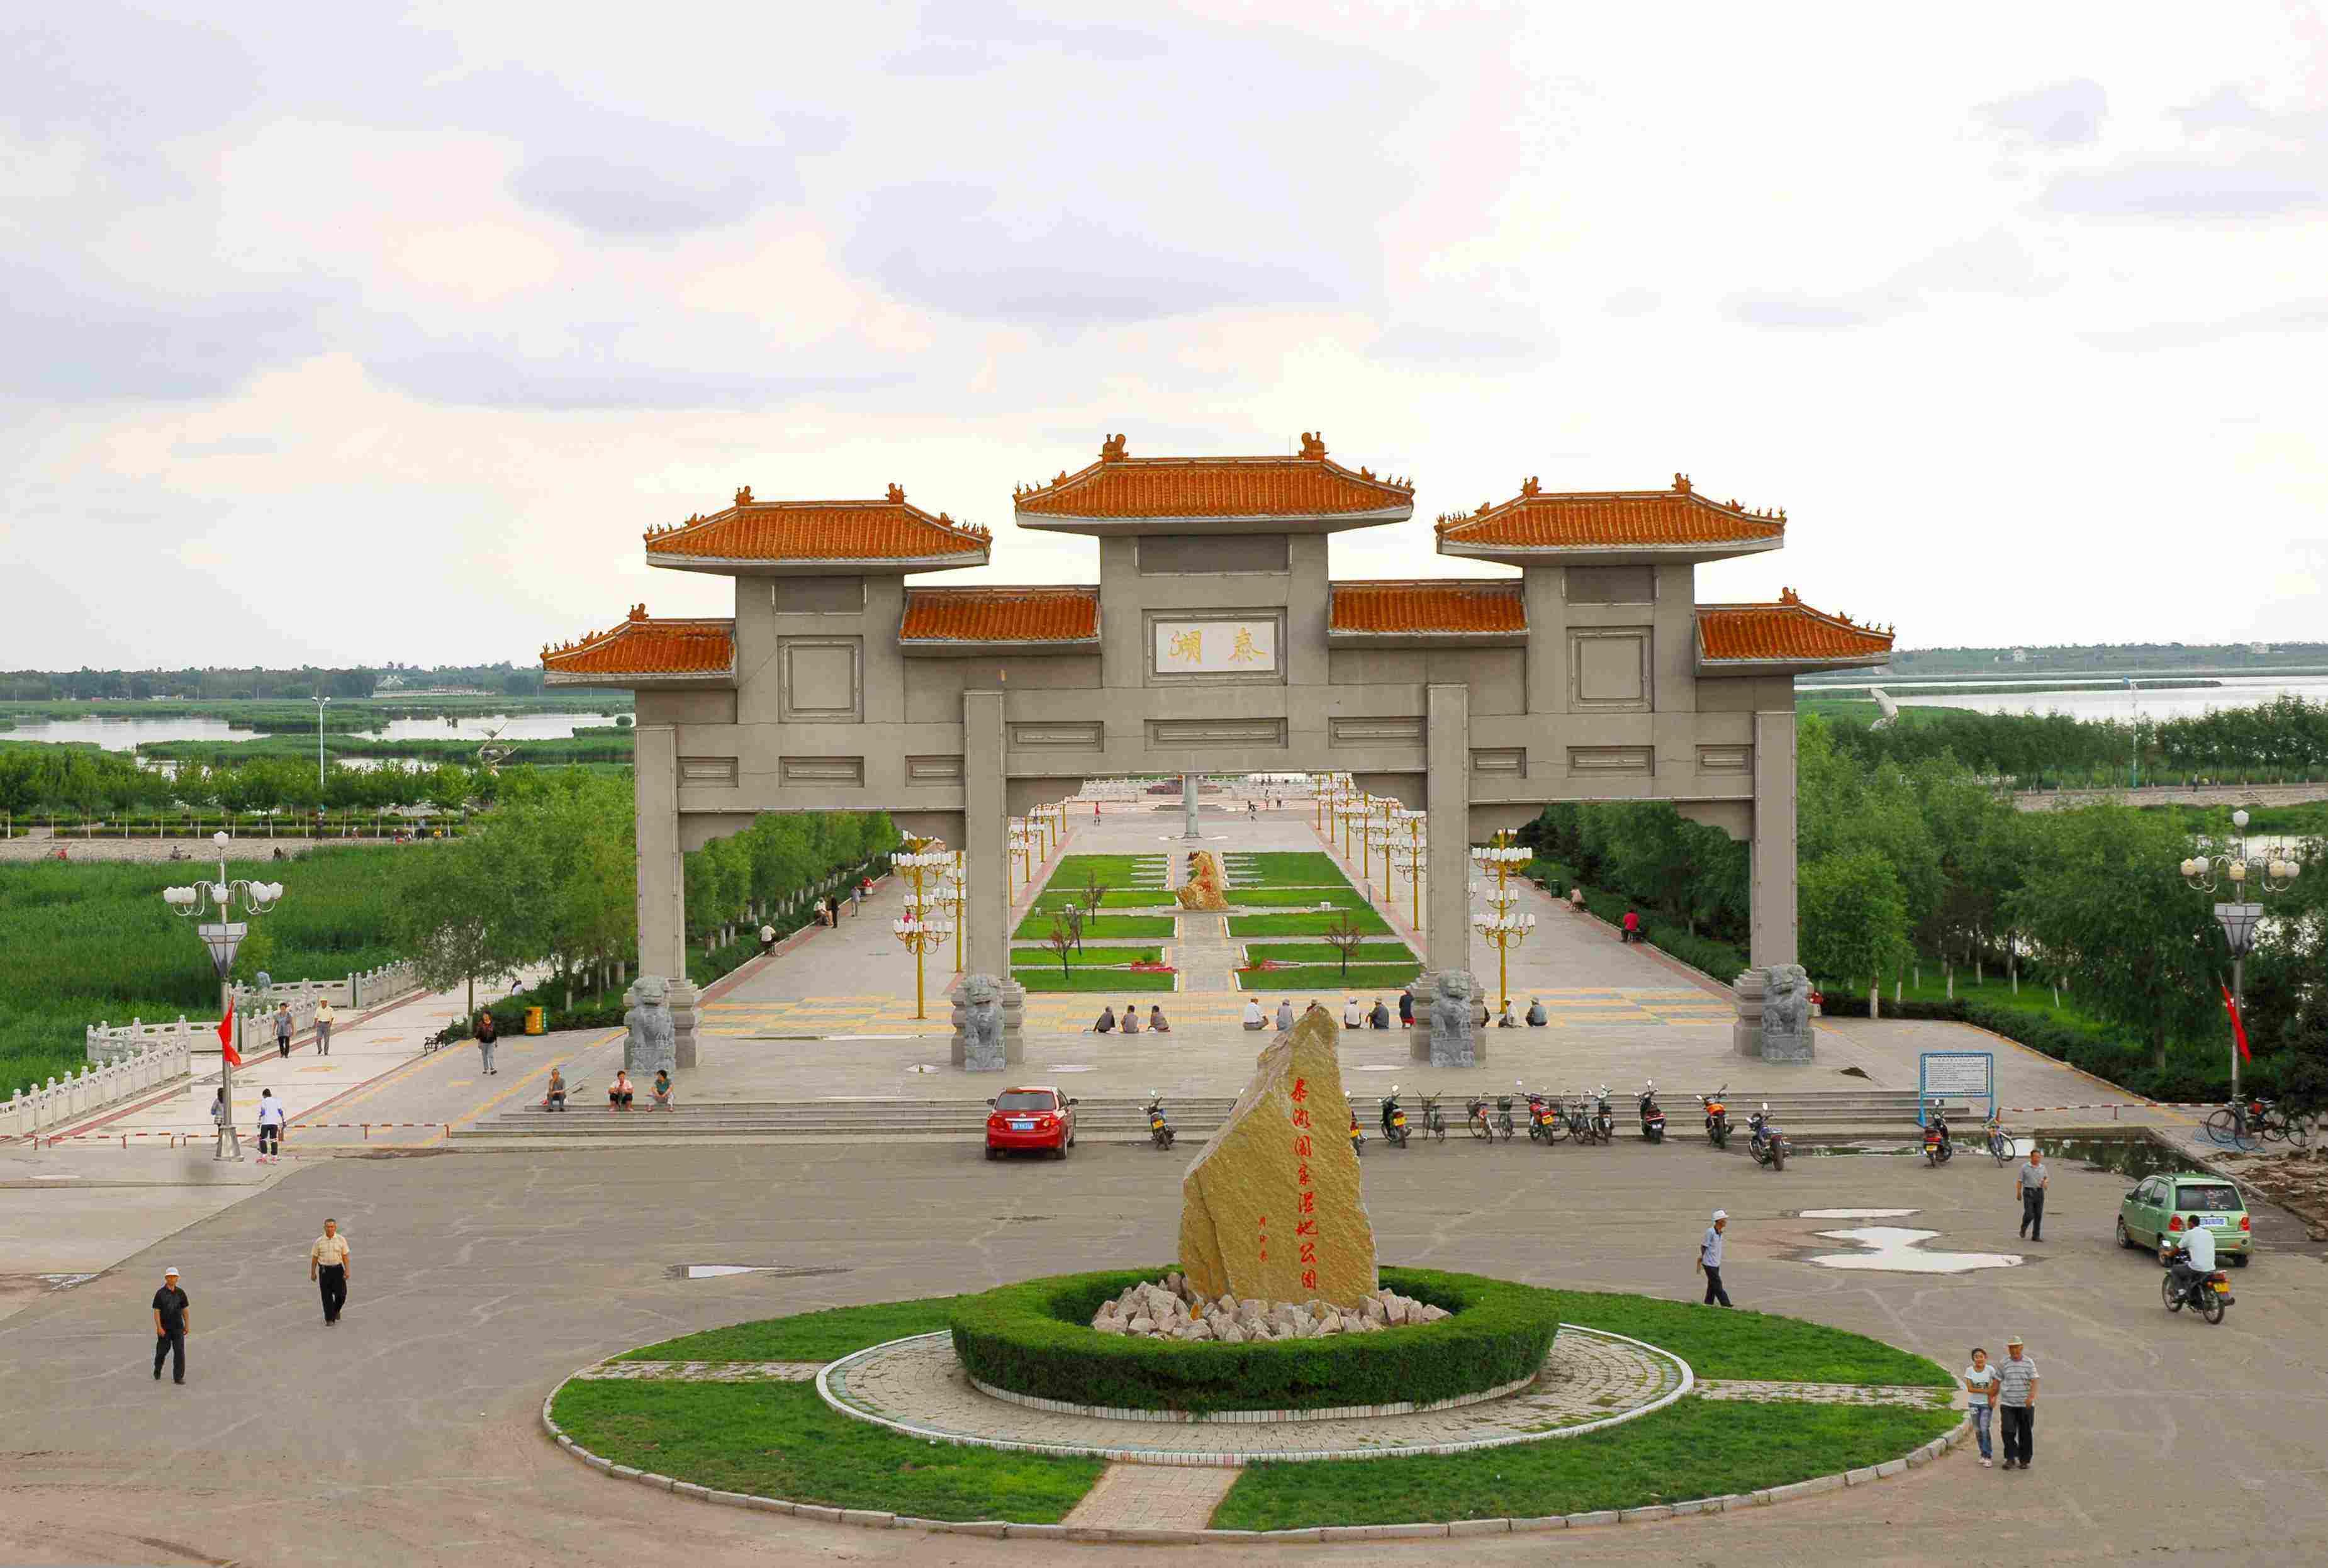 泰来县,隶属于黑龙江省齐齐哈尔,位于黑龙江省西南部,地处黑龙江